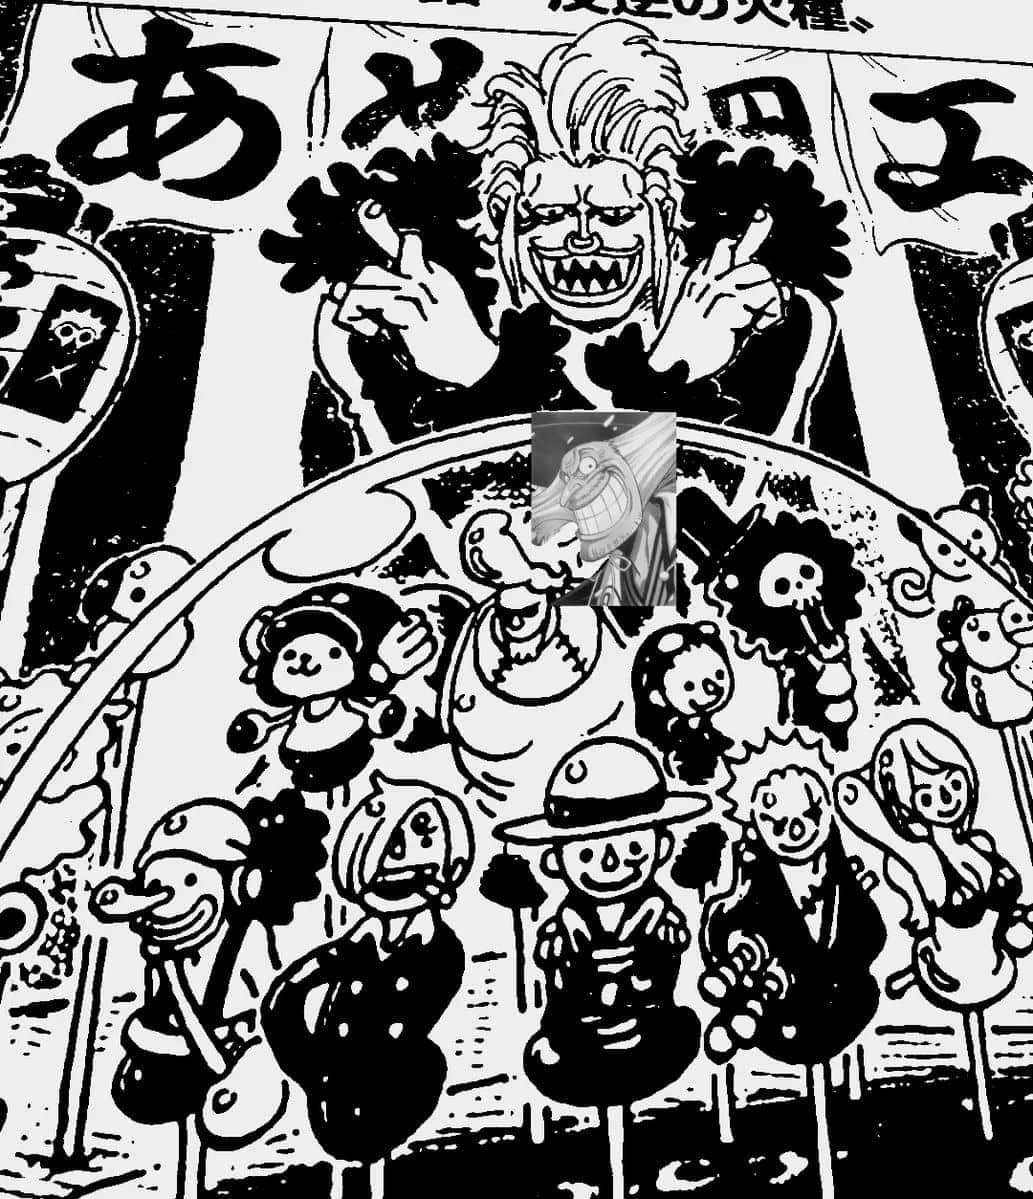 Spoiler One Piece Chap 940 Trong Khi Luffy Vẫn Chăm Chỉ Luyện Tập Cach Sử Dụng Haki Vũ Trang Mới Thi Big Mom đa Tới Trước Nha Ngục